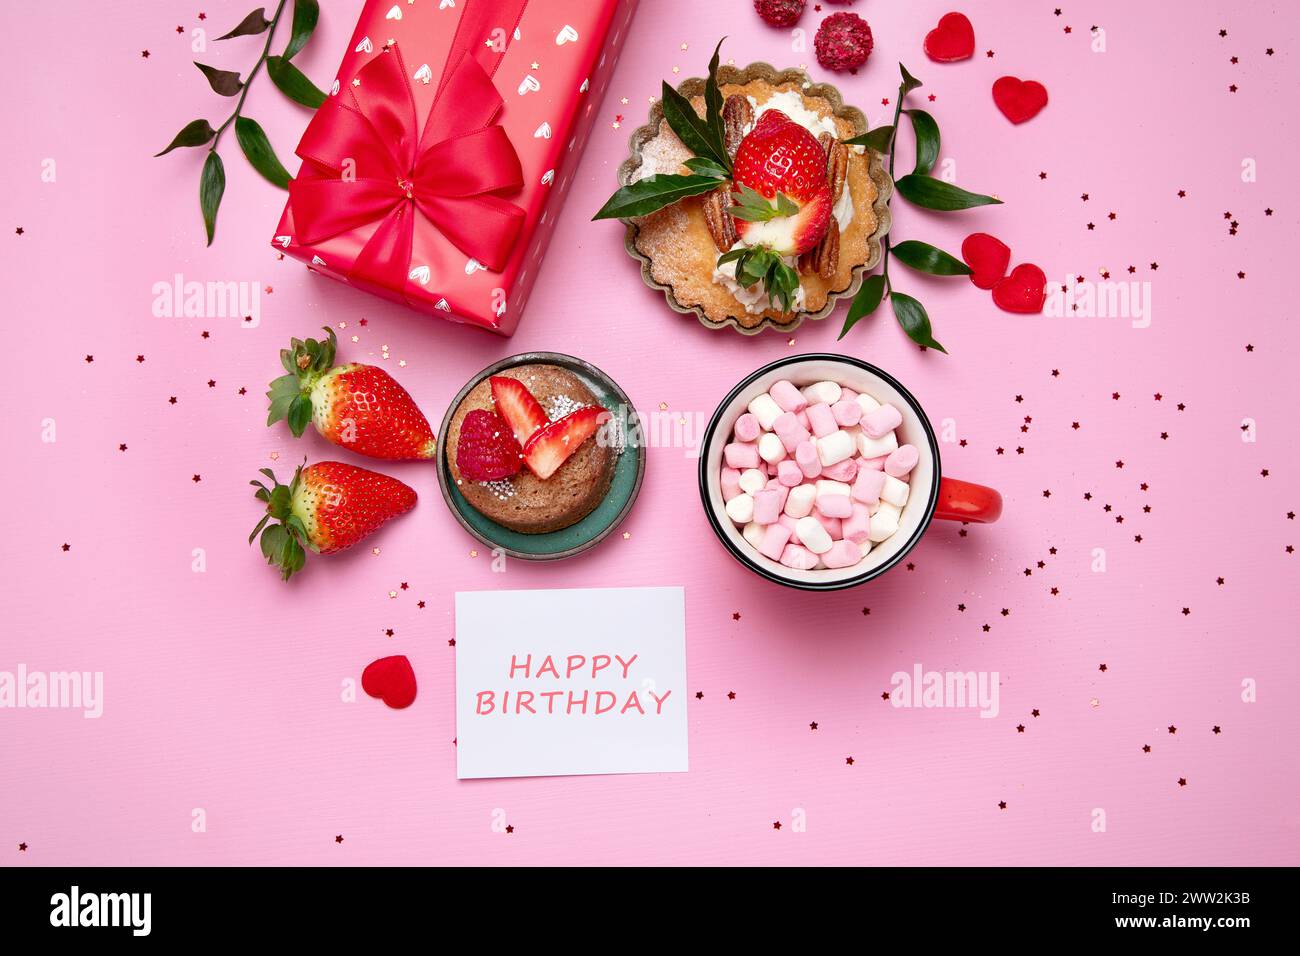 Festlicher rosafarbener Hintergrund mit Cupcake, Erdbeeren, Schokolade, heißem Getränk. Geburtstagsfeier. Draufsicht Stockfoto